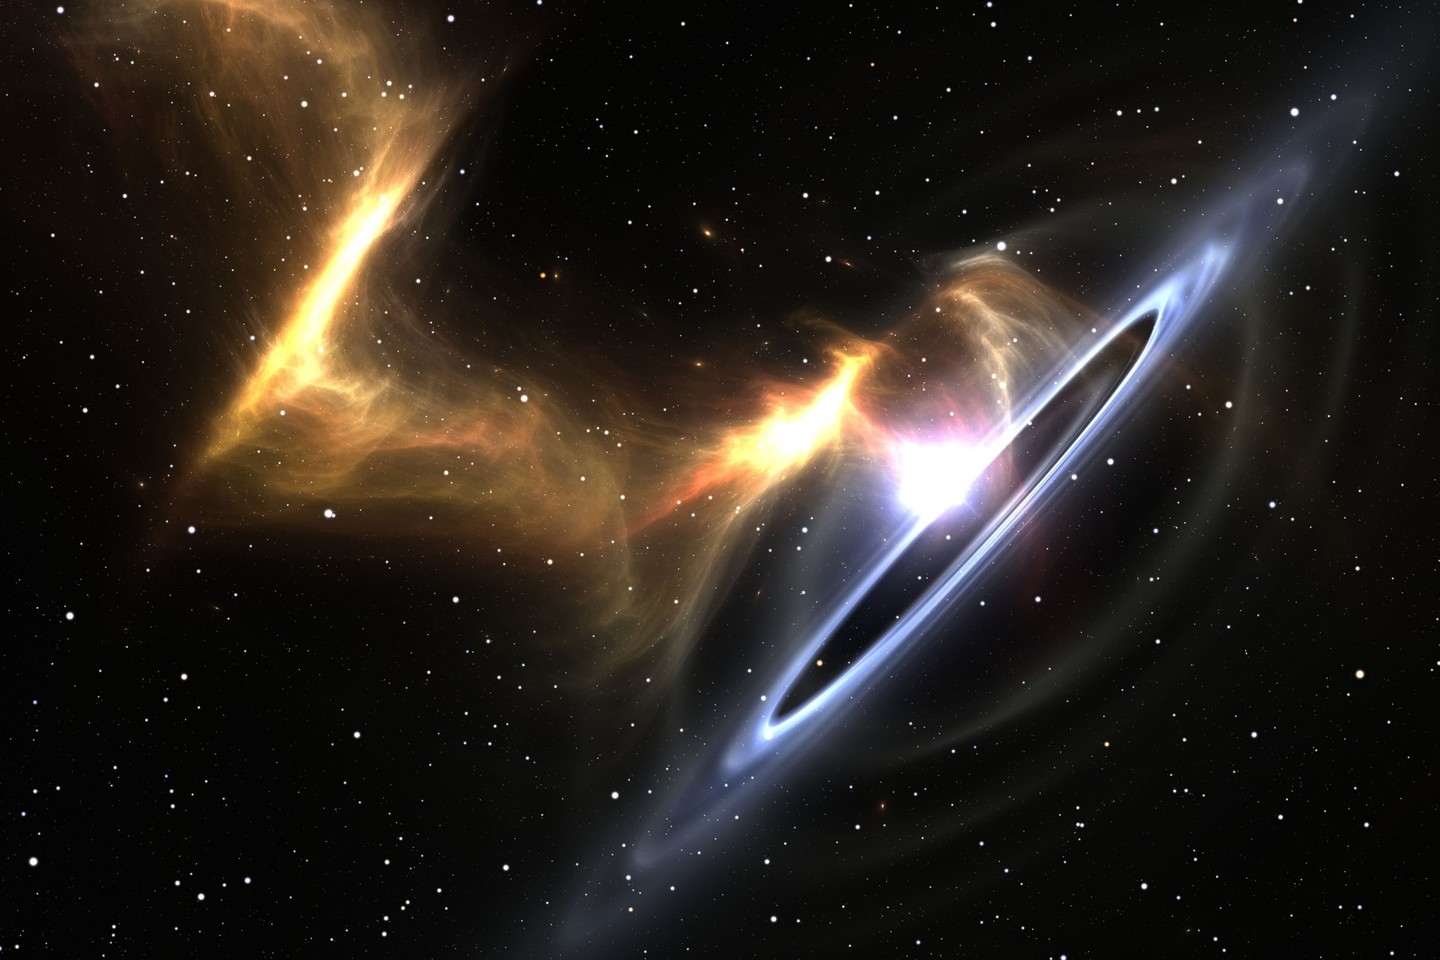 Juodosios skylės gravitacija tokia stipri, kad pabėgimo iš jos greitis viršija šviesos greitį – didžiausią įmanomą.<br>123rf nuotr.